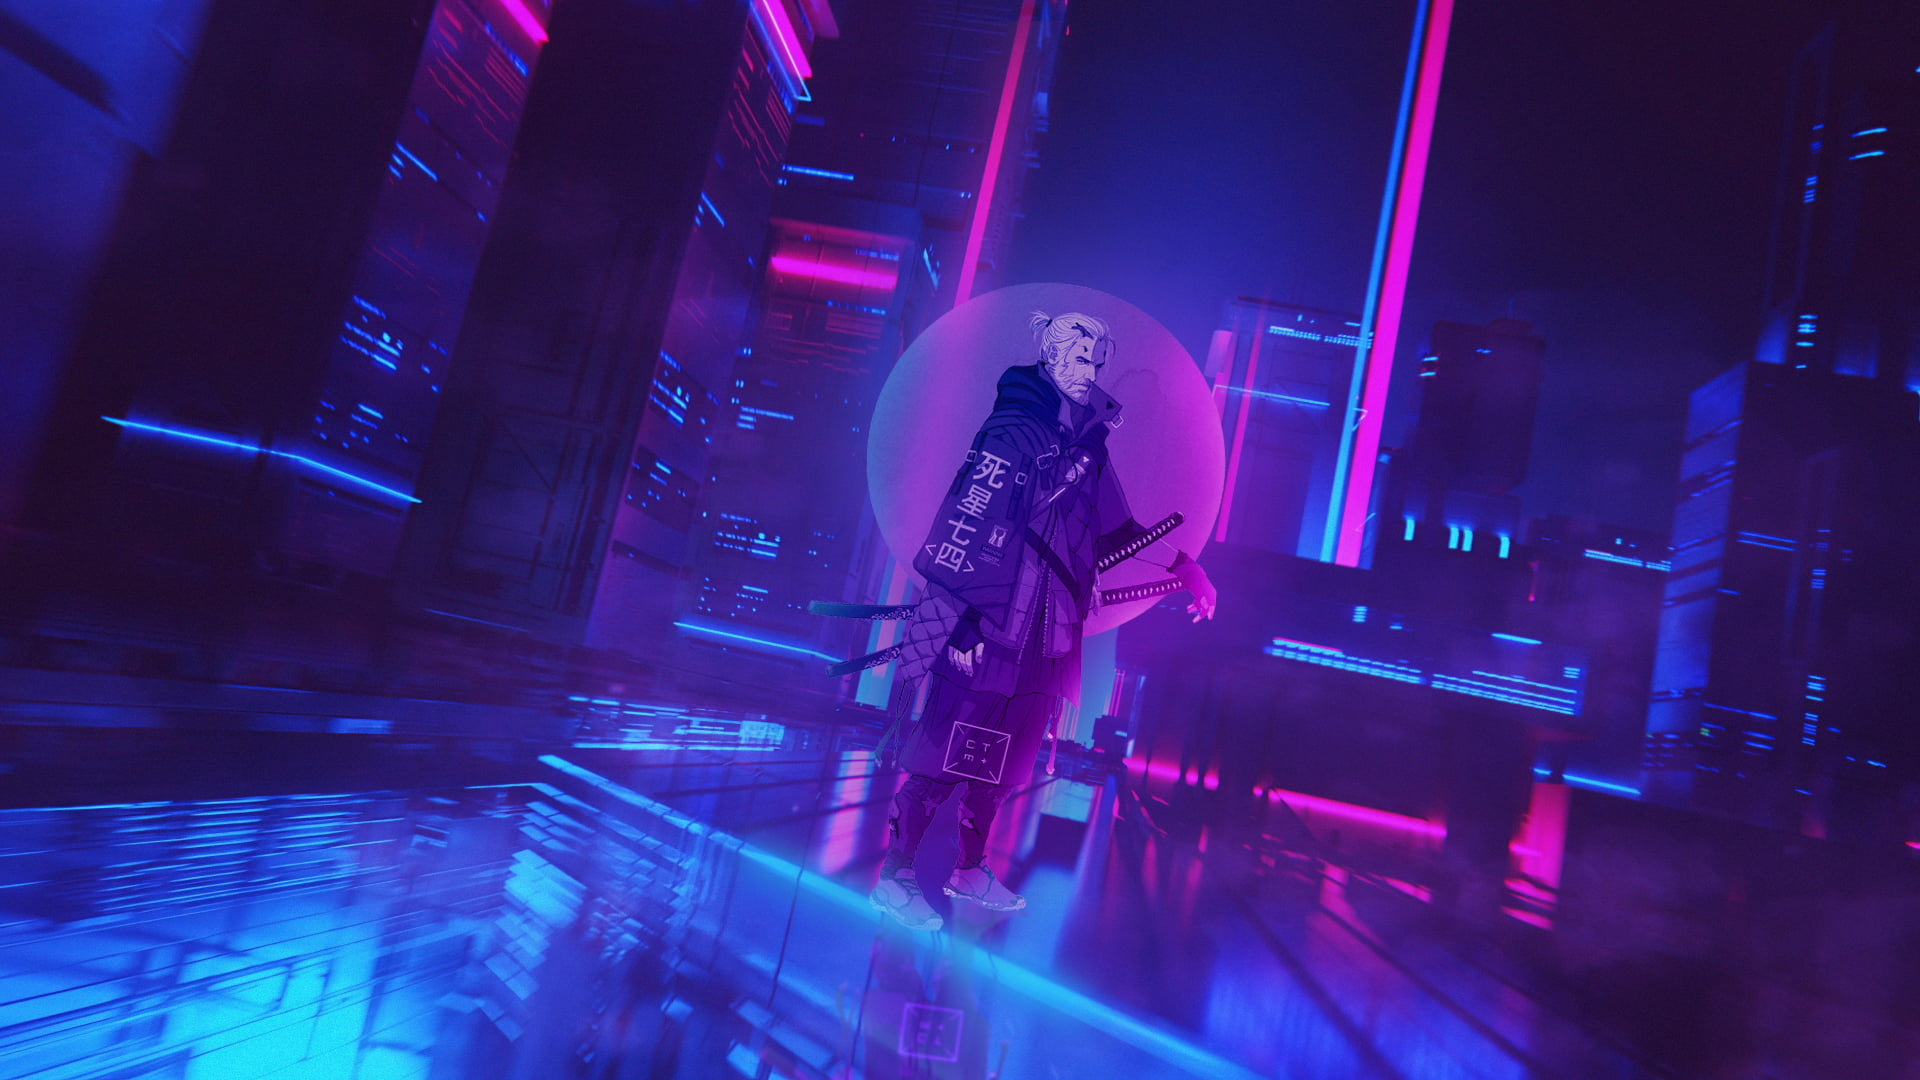 Cyberpunk wallpaper, Cyberpunk 2077, cyber city, neon, The Witcher, Geralt of Rivia